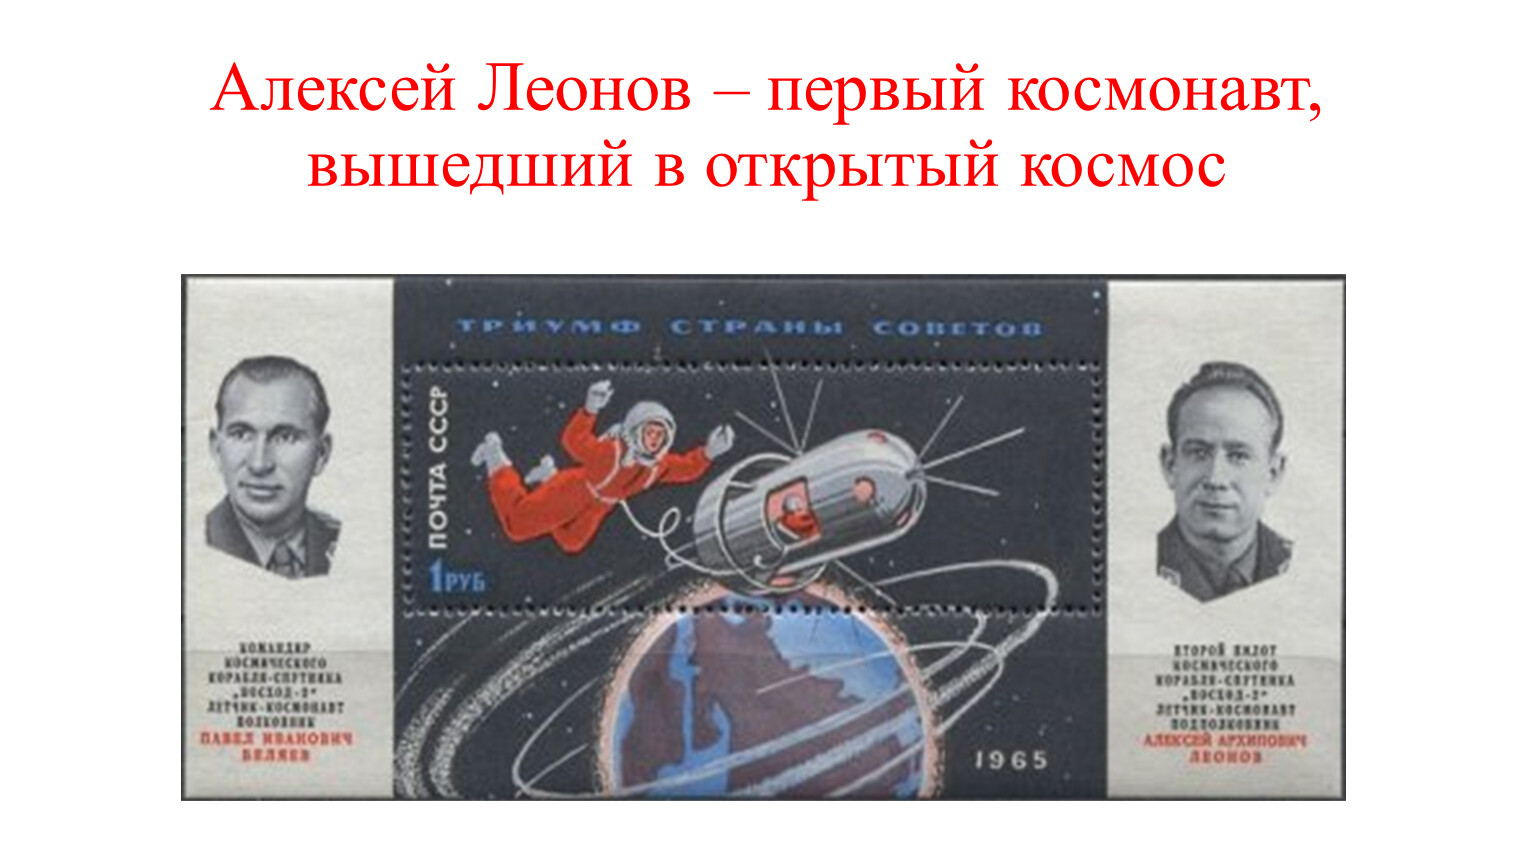 Летчик космонавт Леонов впервые в истории